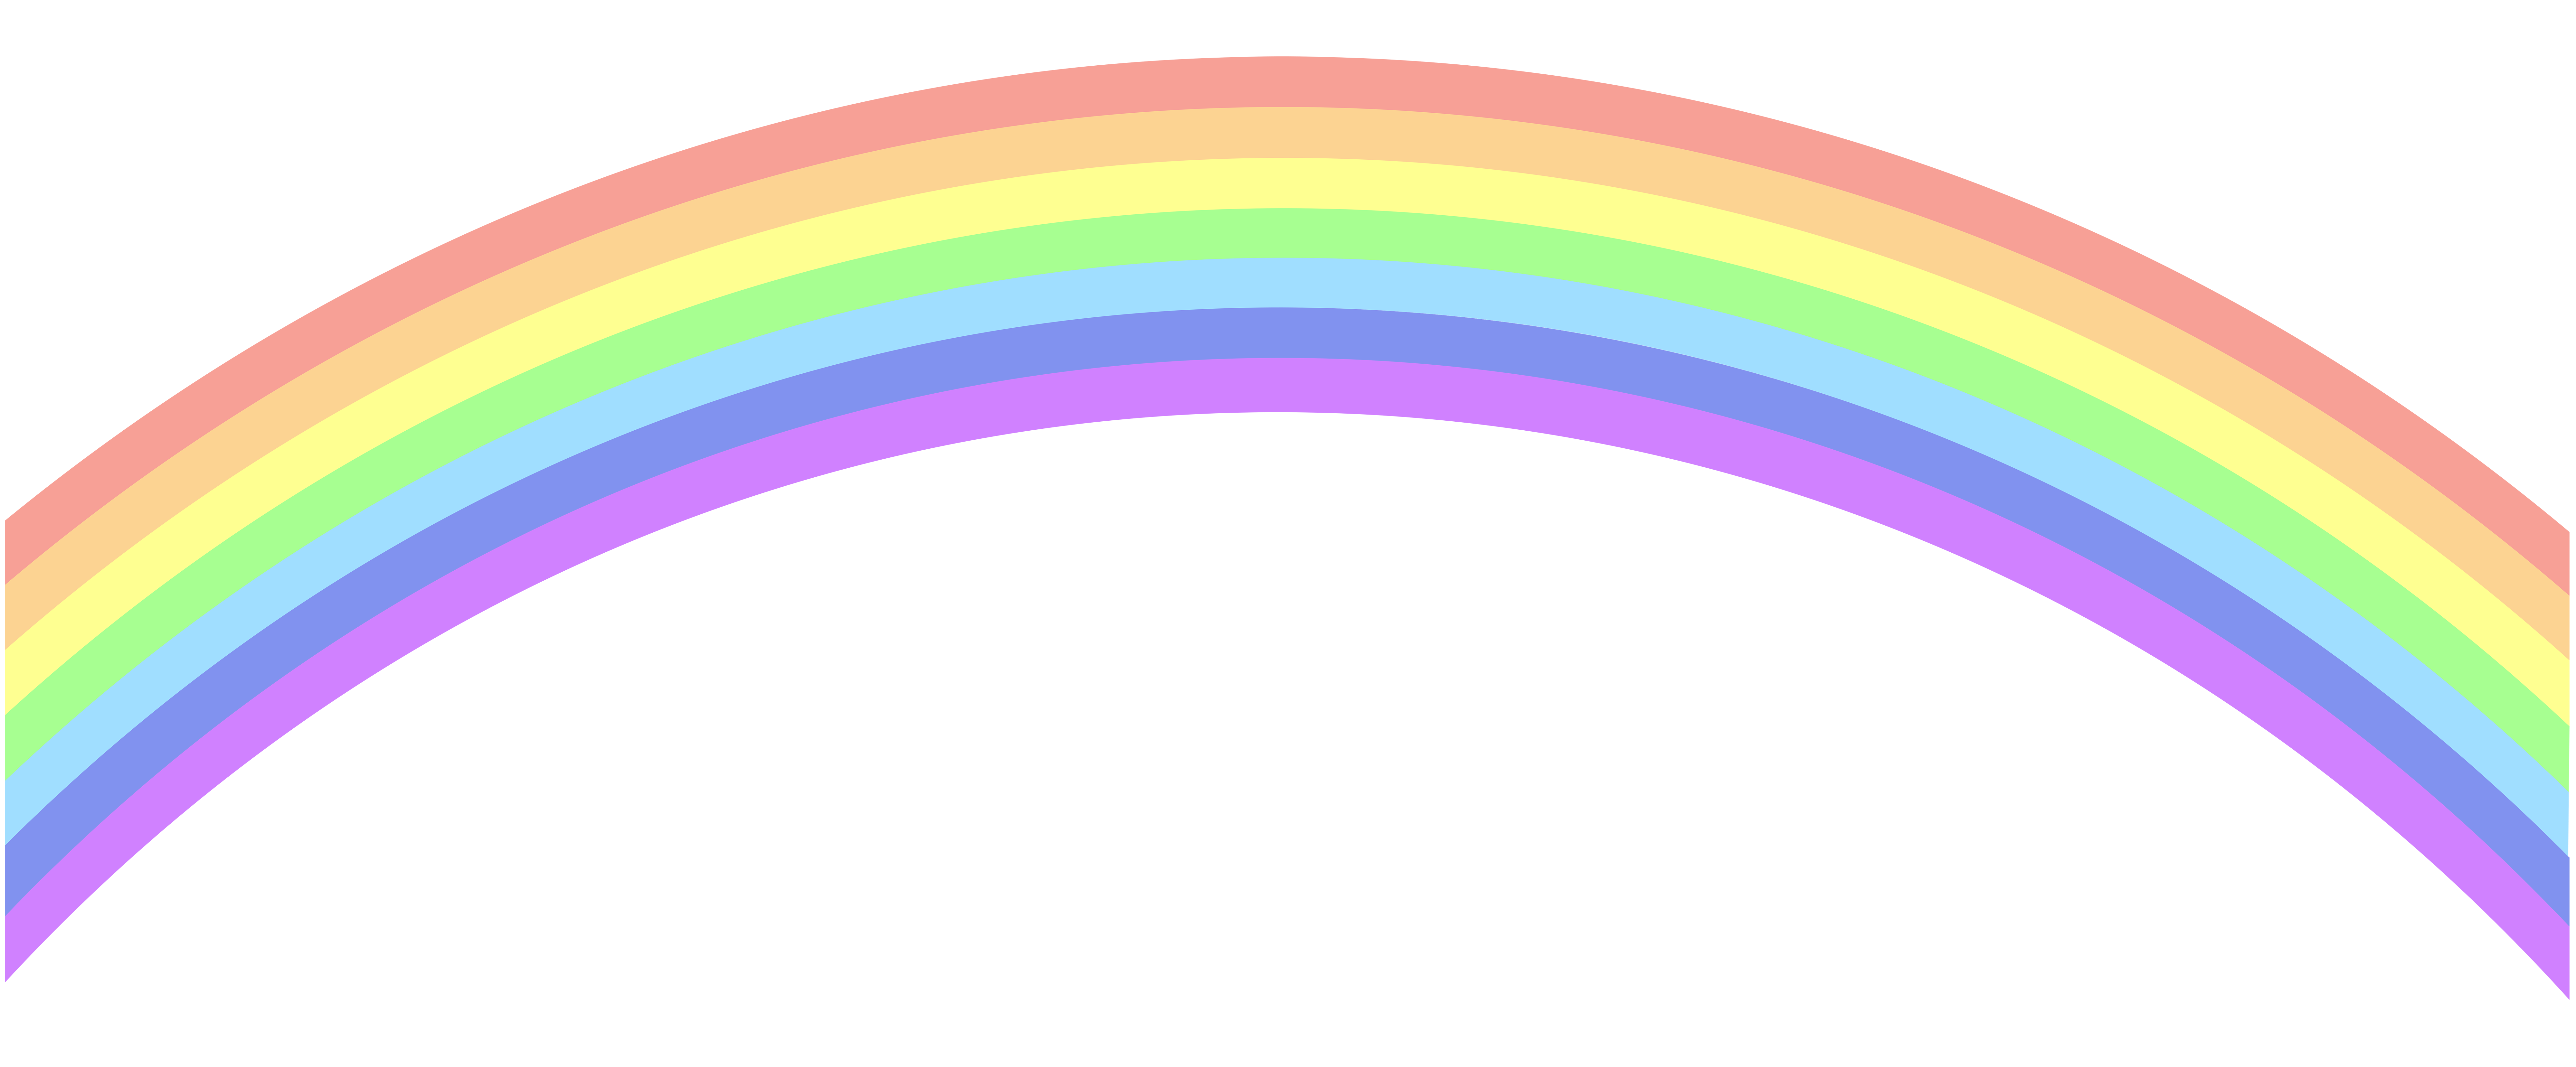 clipart rainbow - photo #13